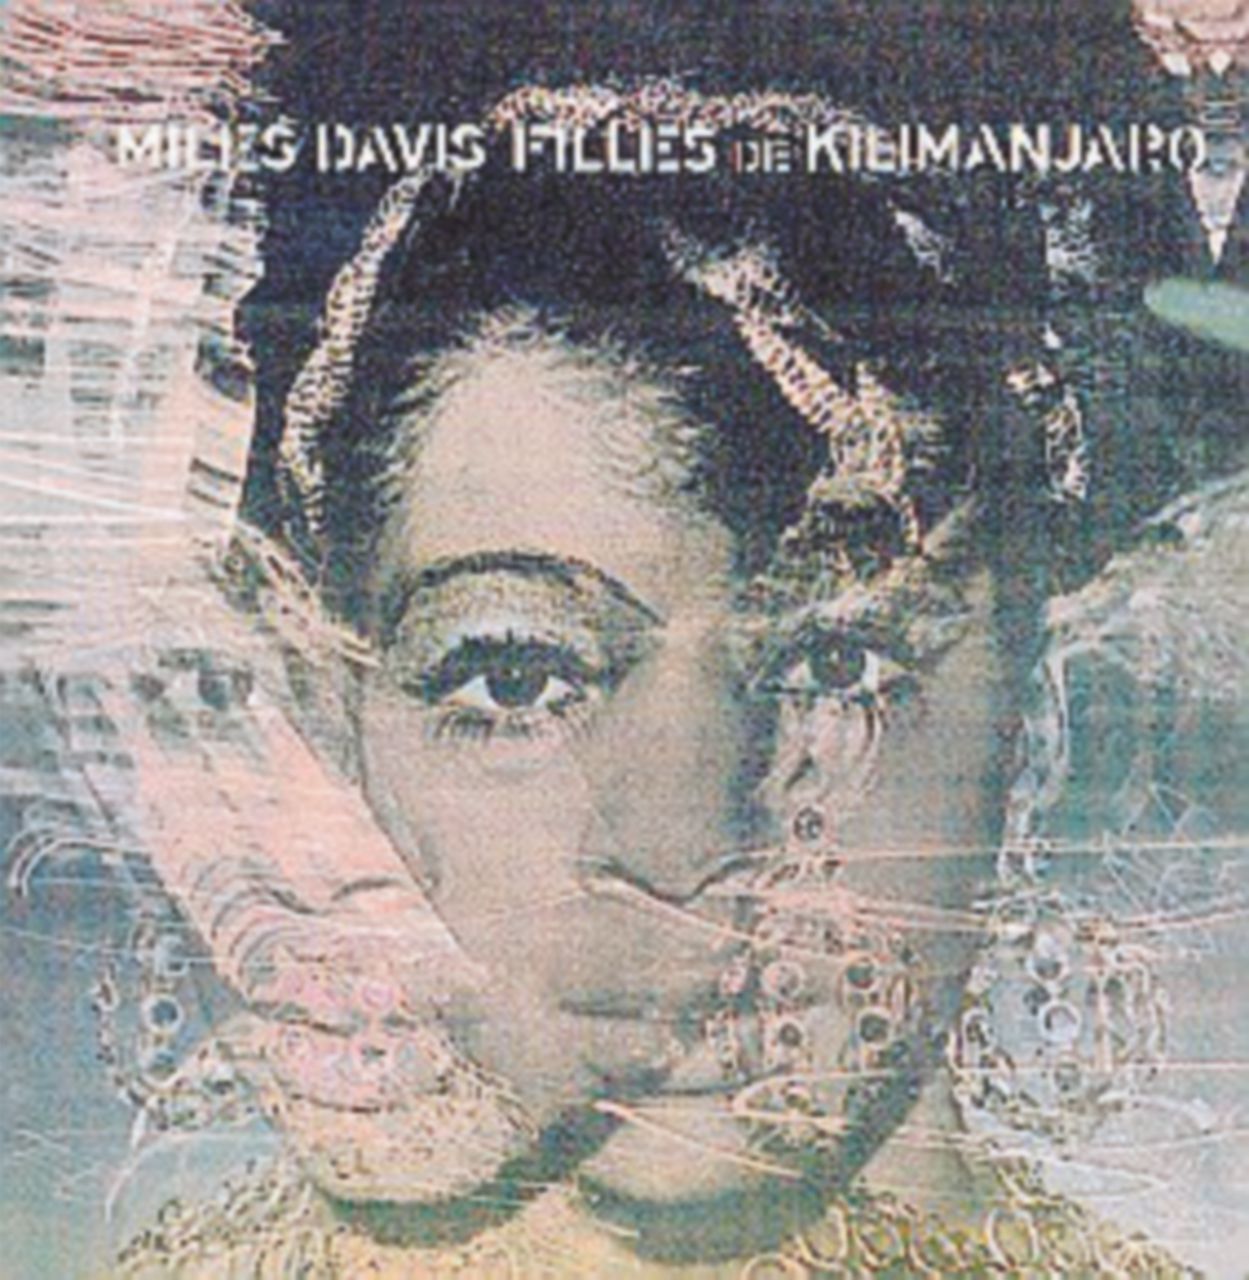 Copertina di “Filles de Kilimanjaro” l’alba di un nuovo Miles Davis